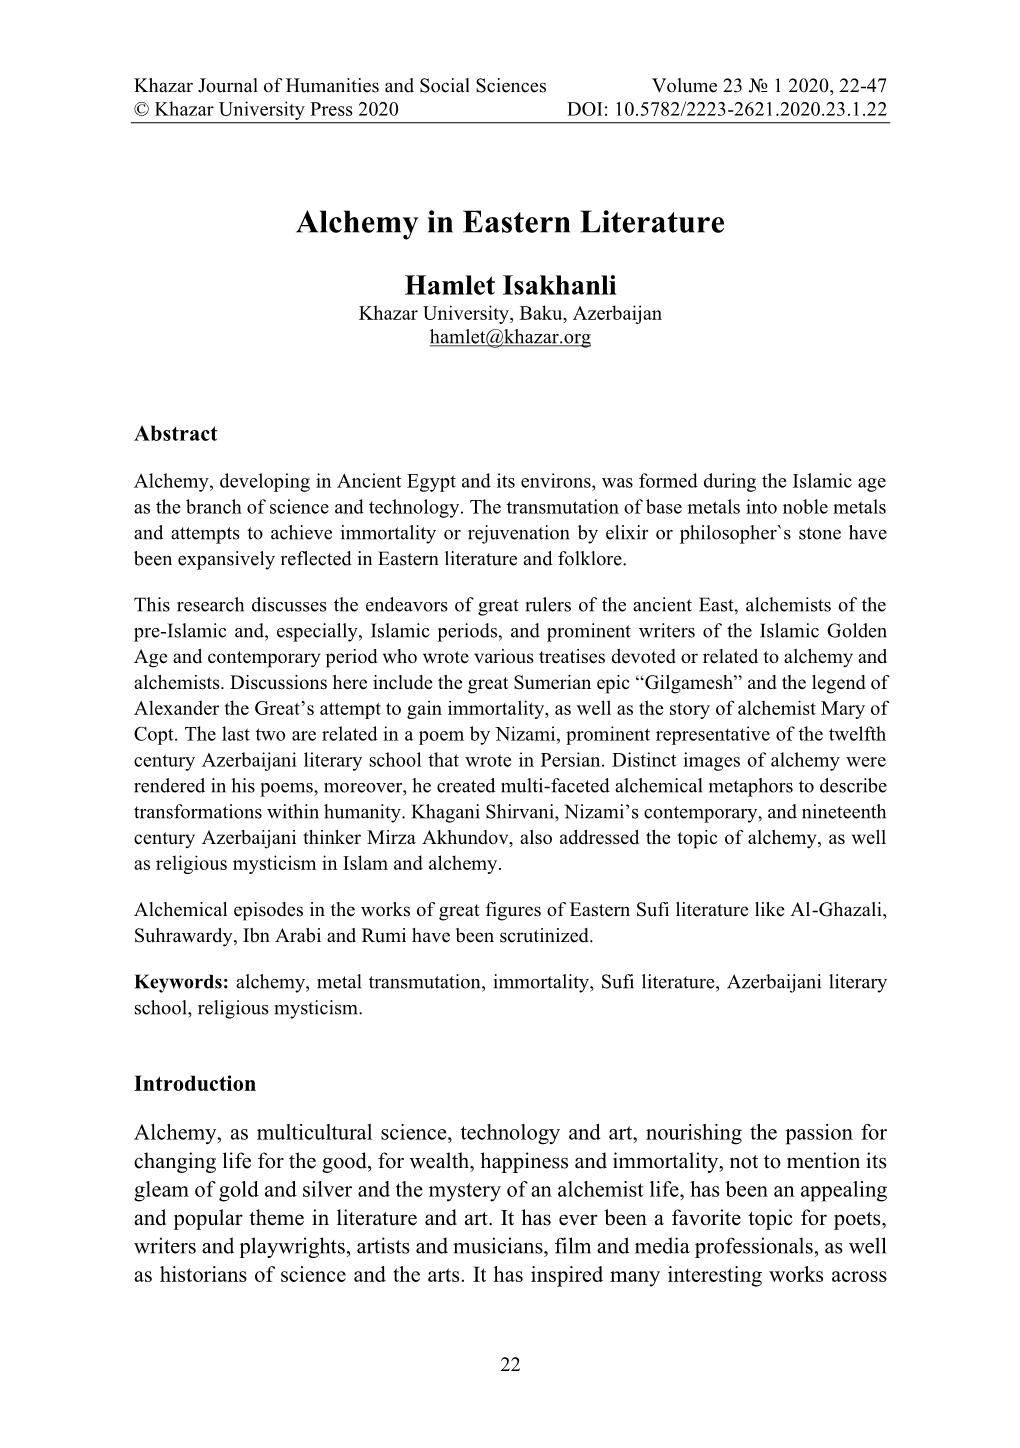 Alchemy in Eastern Literature